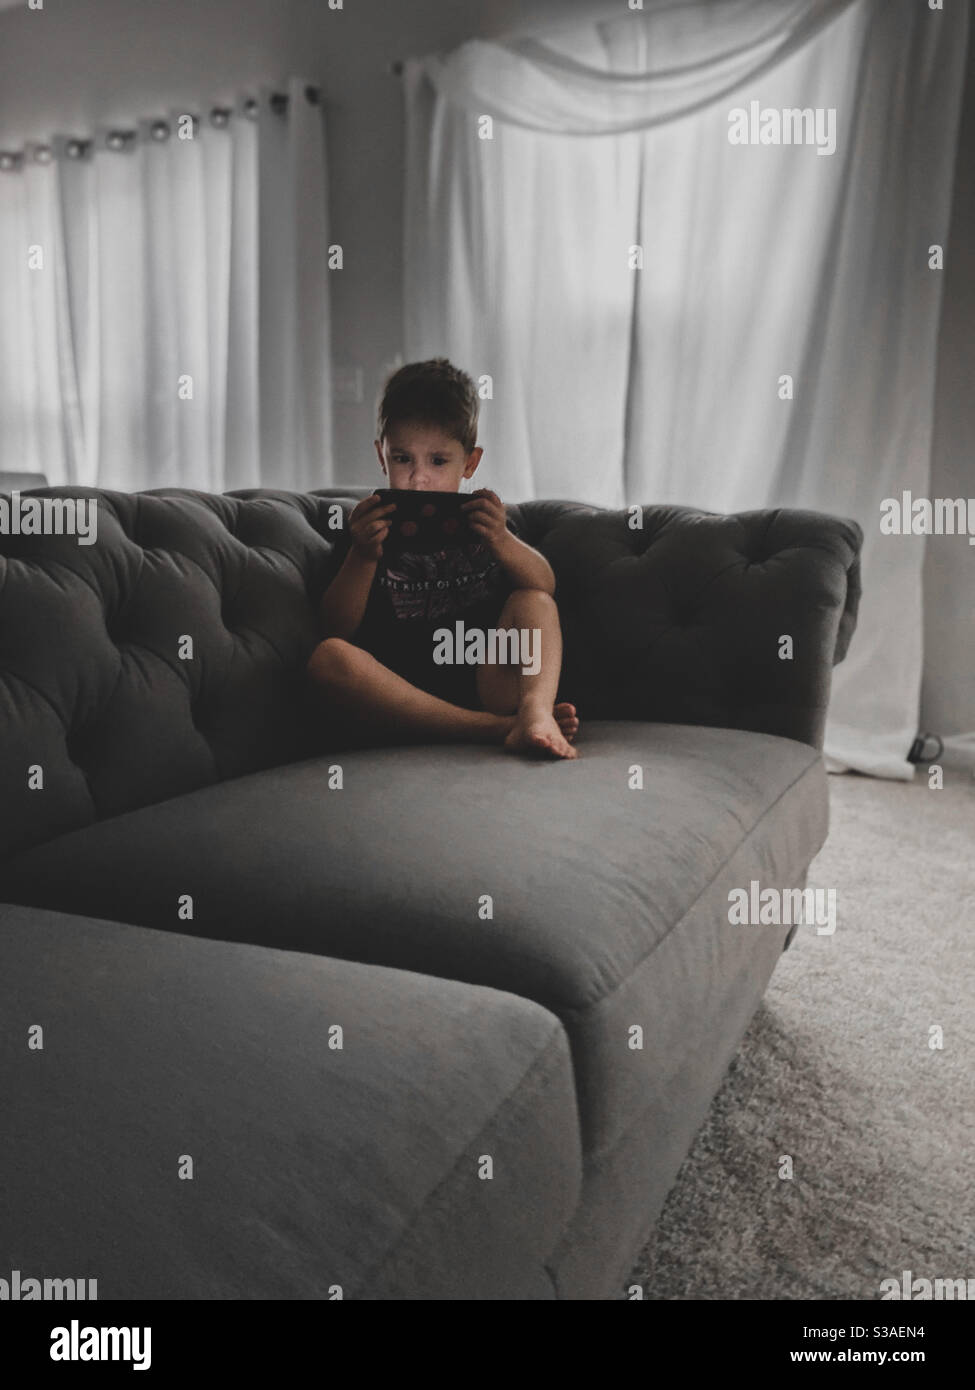 Generation Alpha, ein Junge, schon in jungen Jahren technologiesüchtig. Sitzen auf einer grauen Couch im Wohnzimmer, im Dunkeln, fasziniert vom Bildschirm. Stockfoto